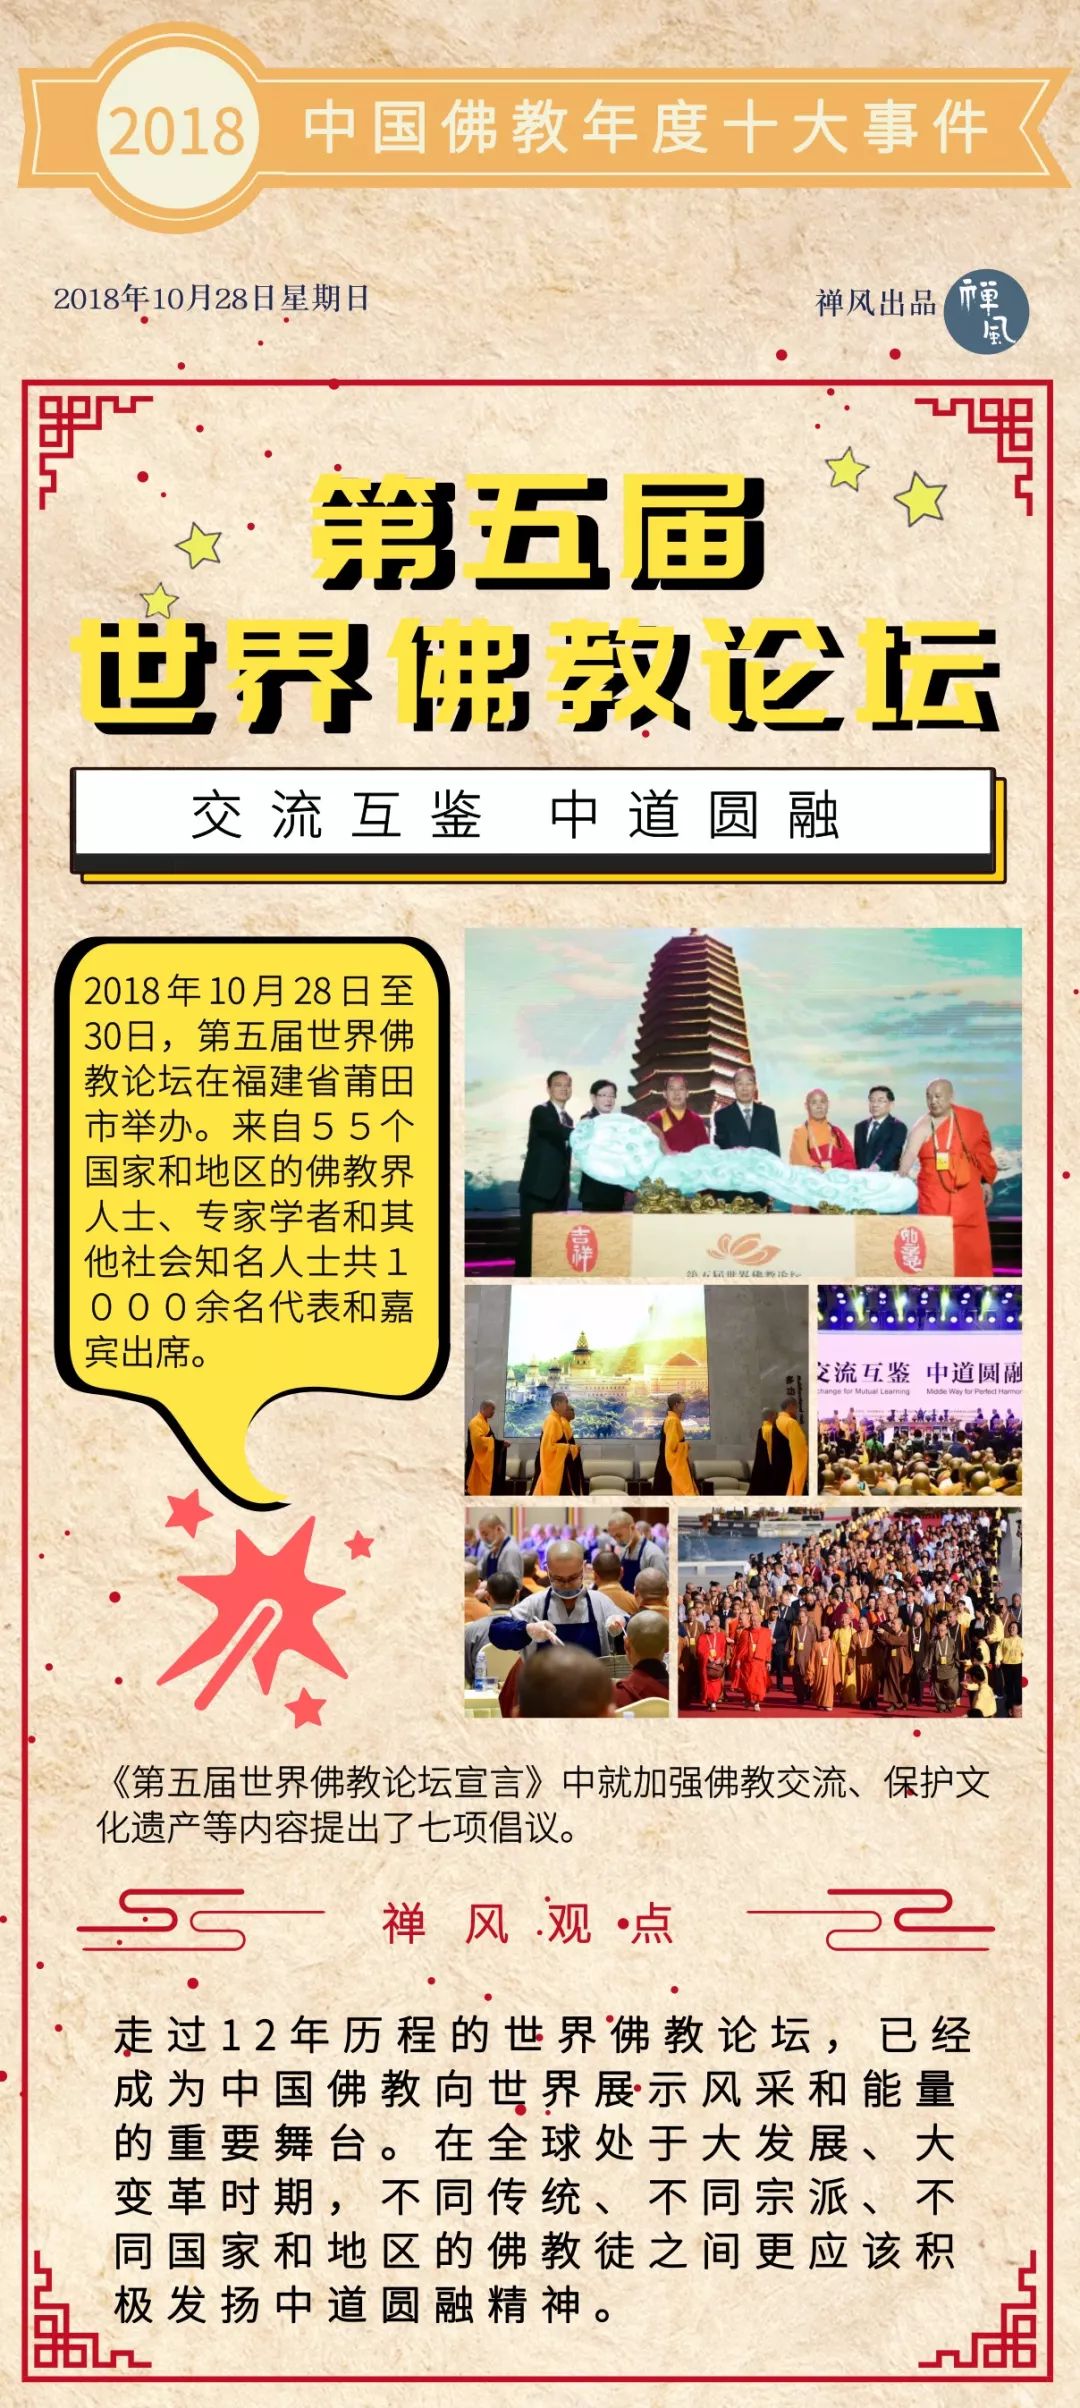 2018中国佛教年度十大事件 | 禅风年终盘点